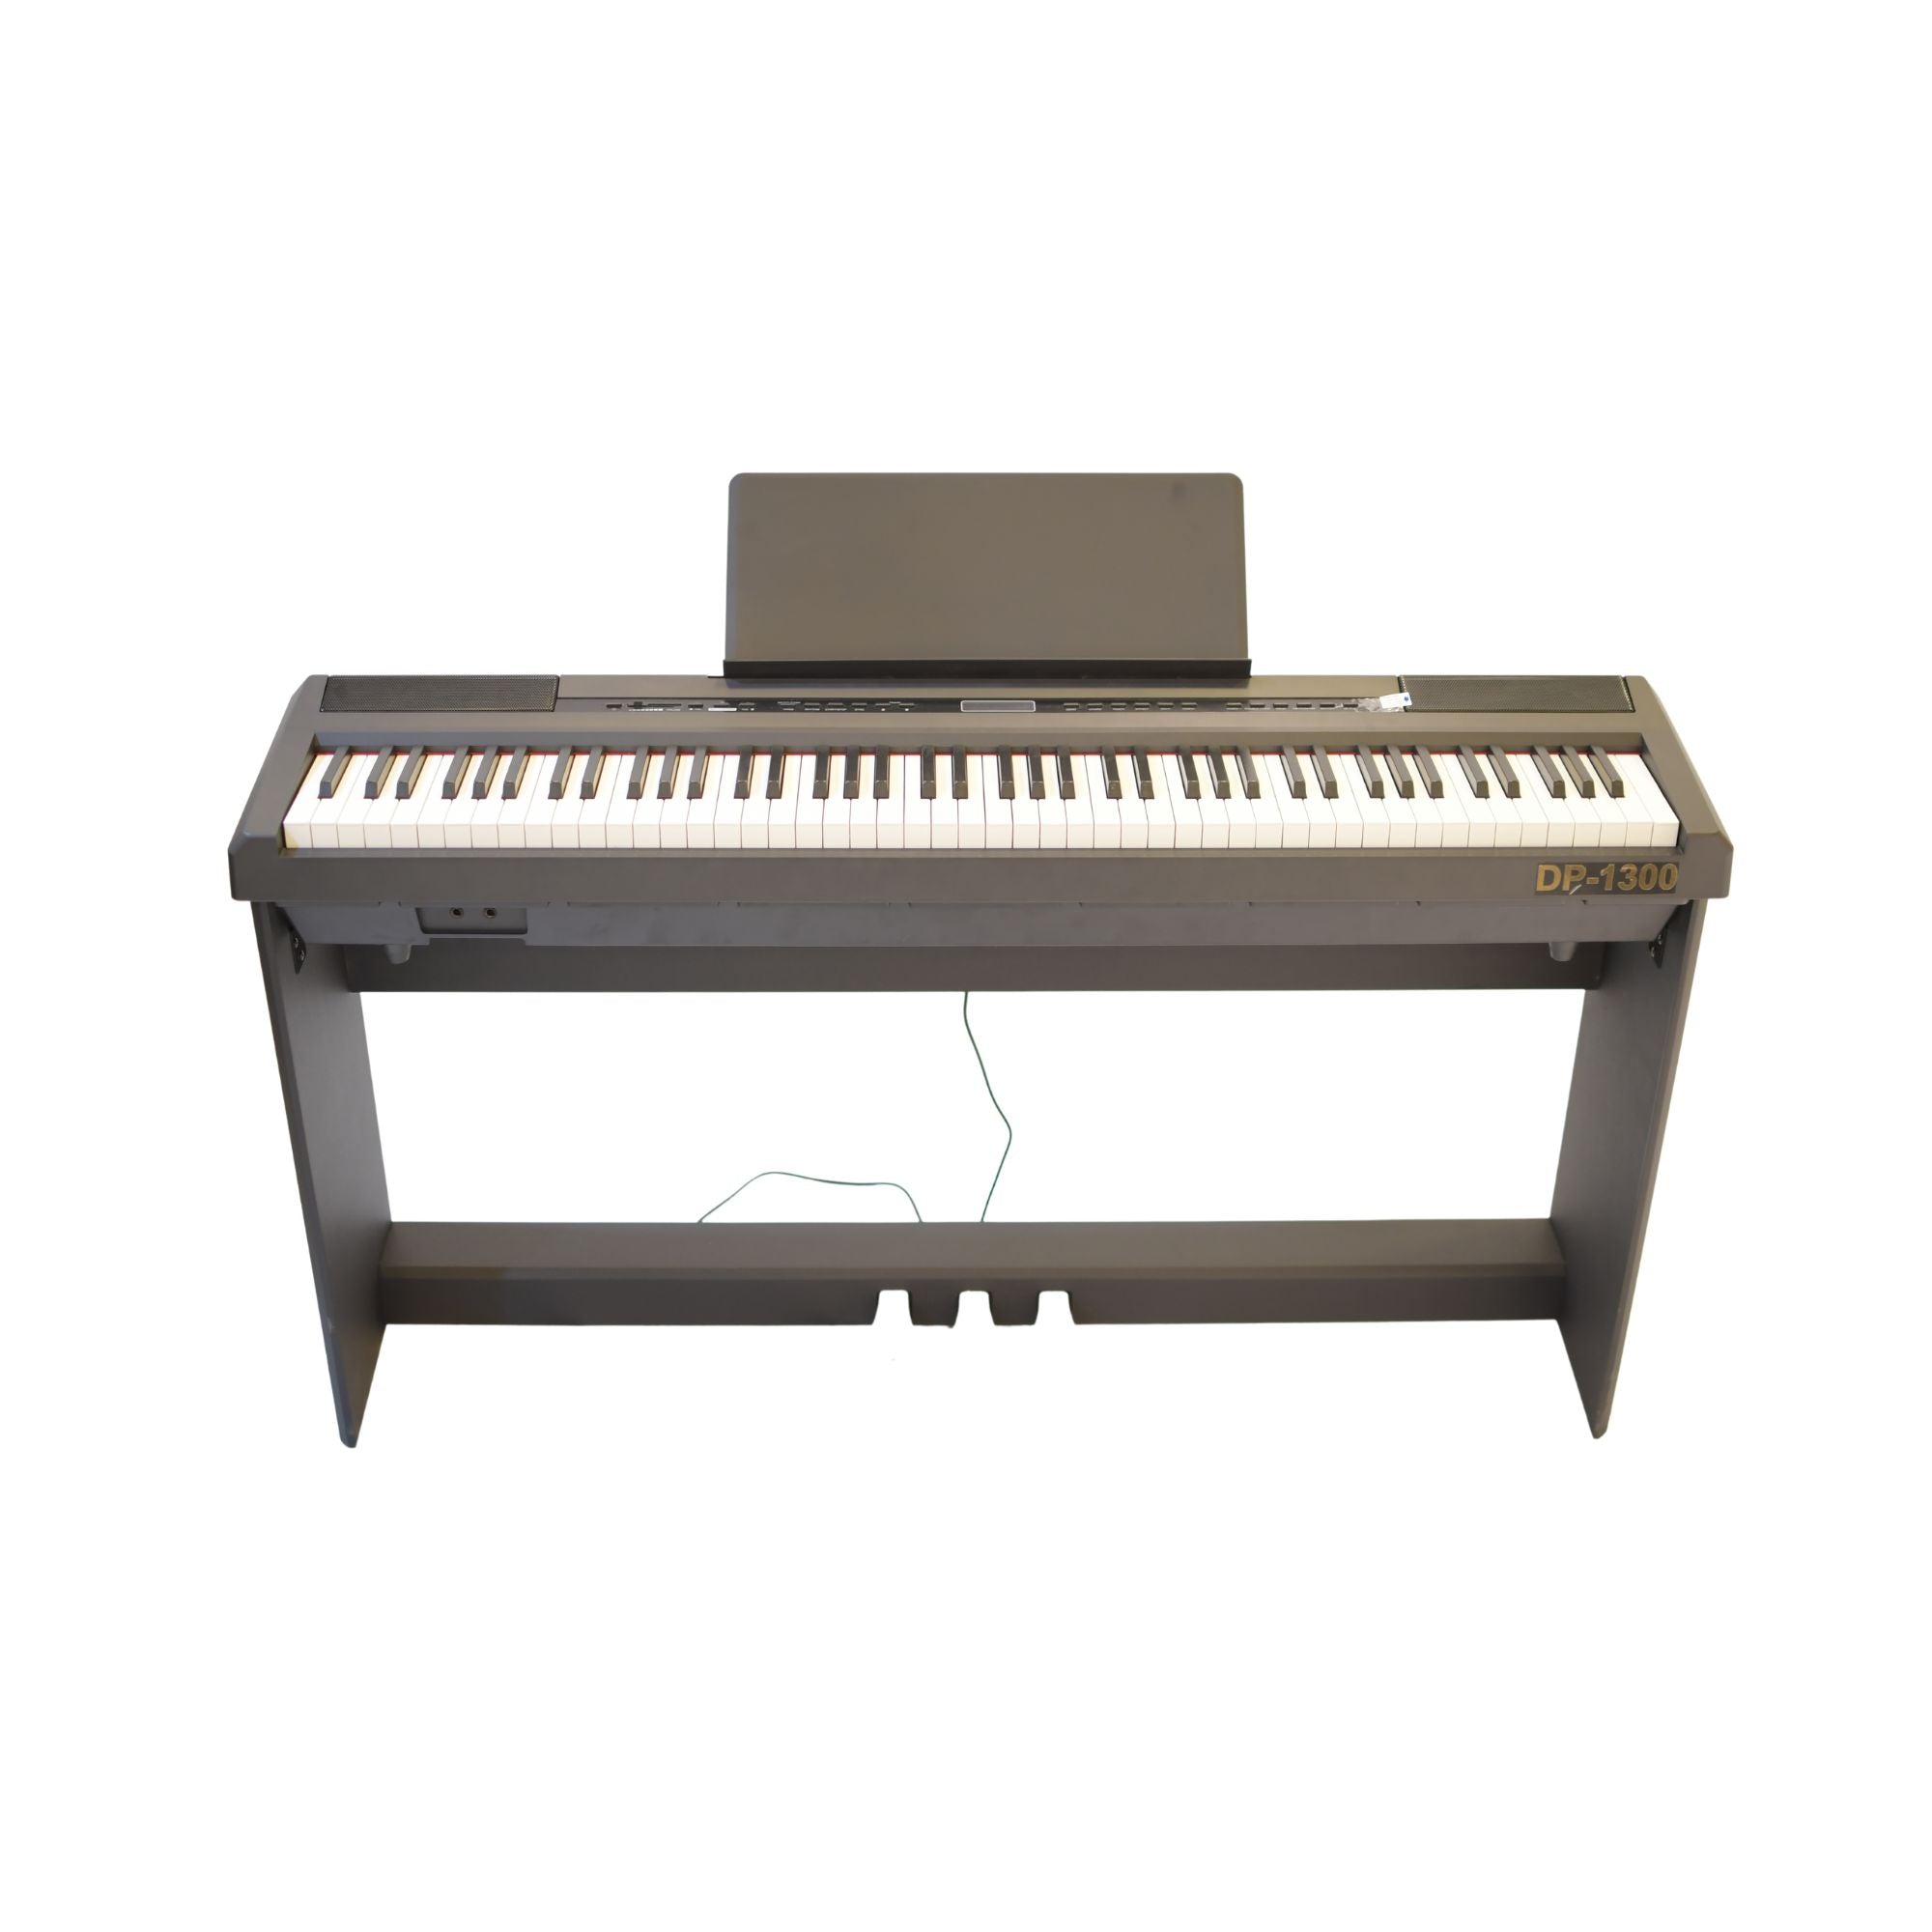 Buy Digital Piano in Dubai